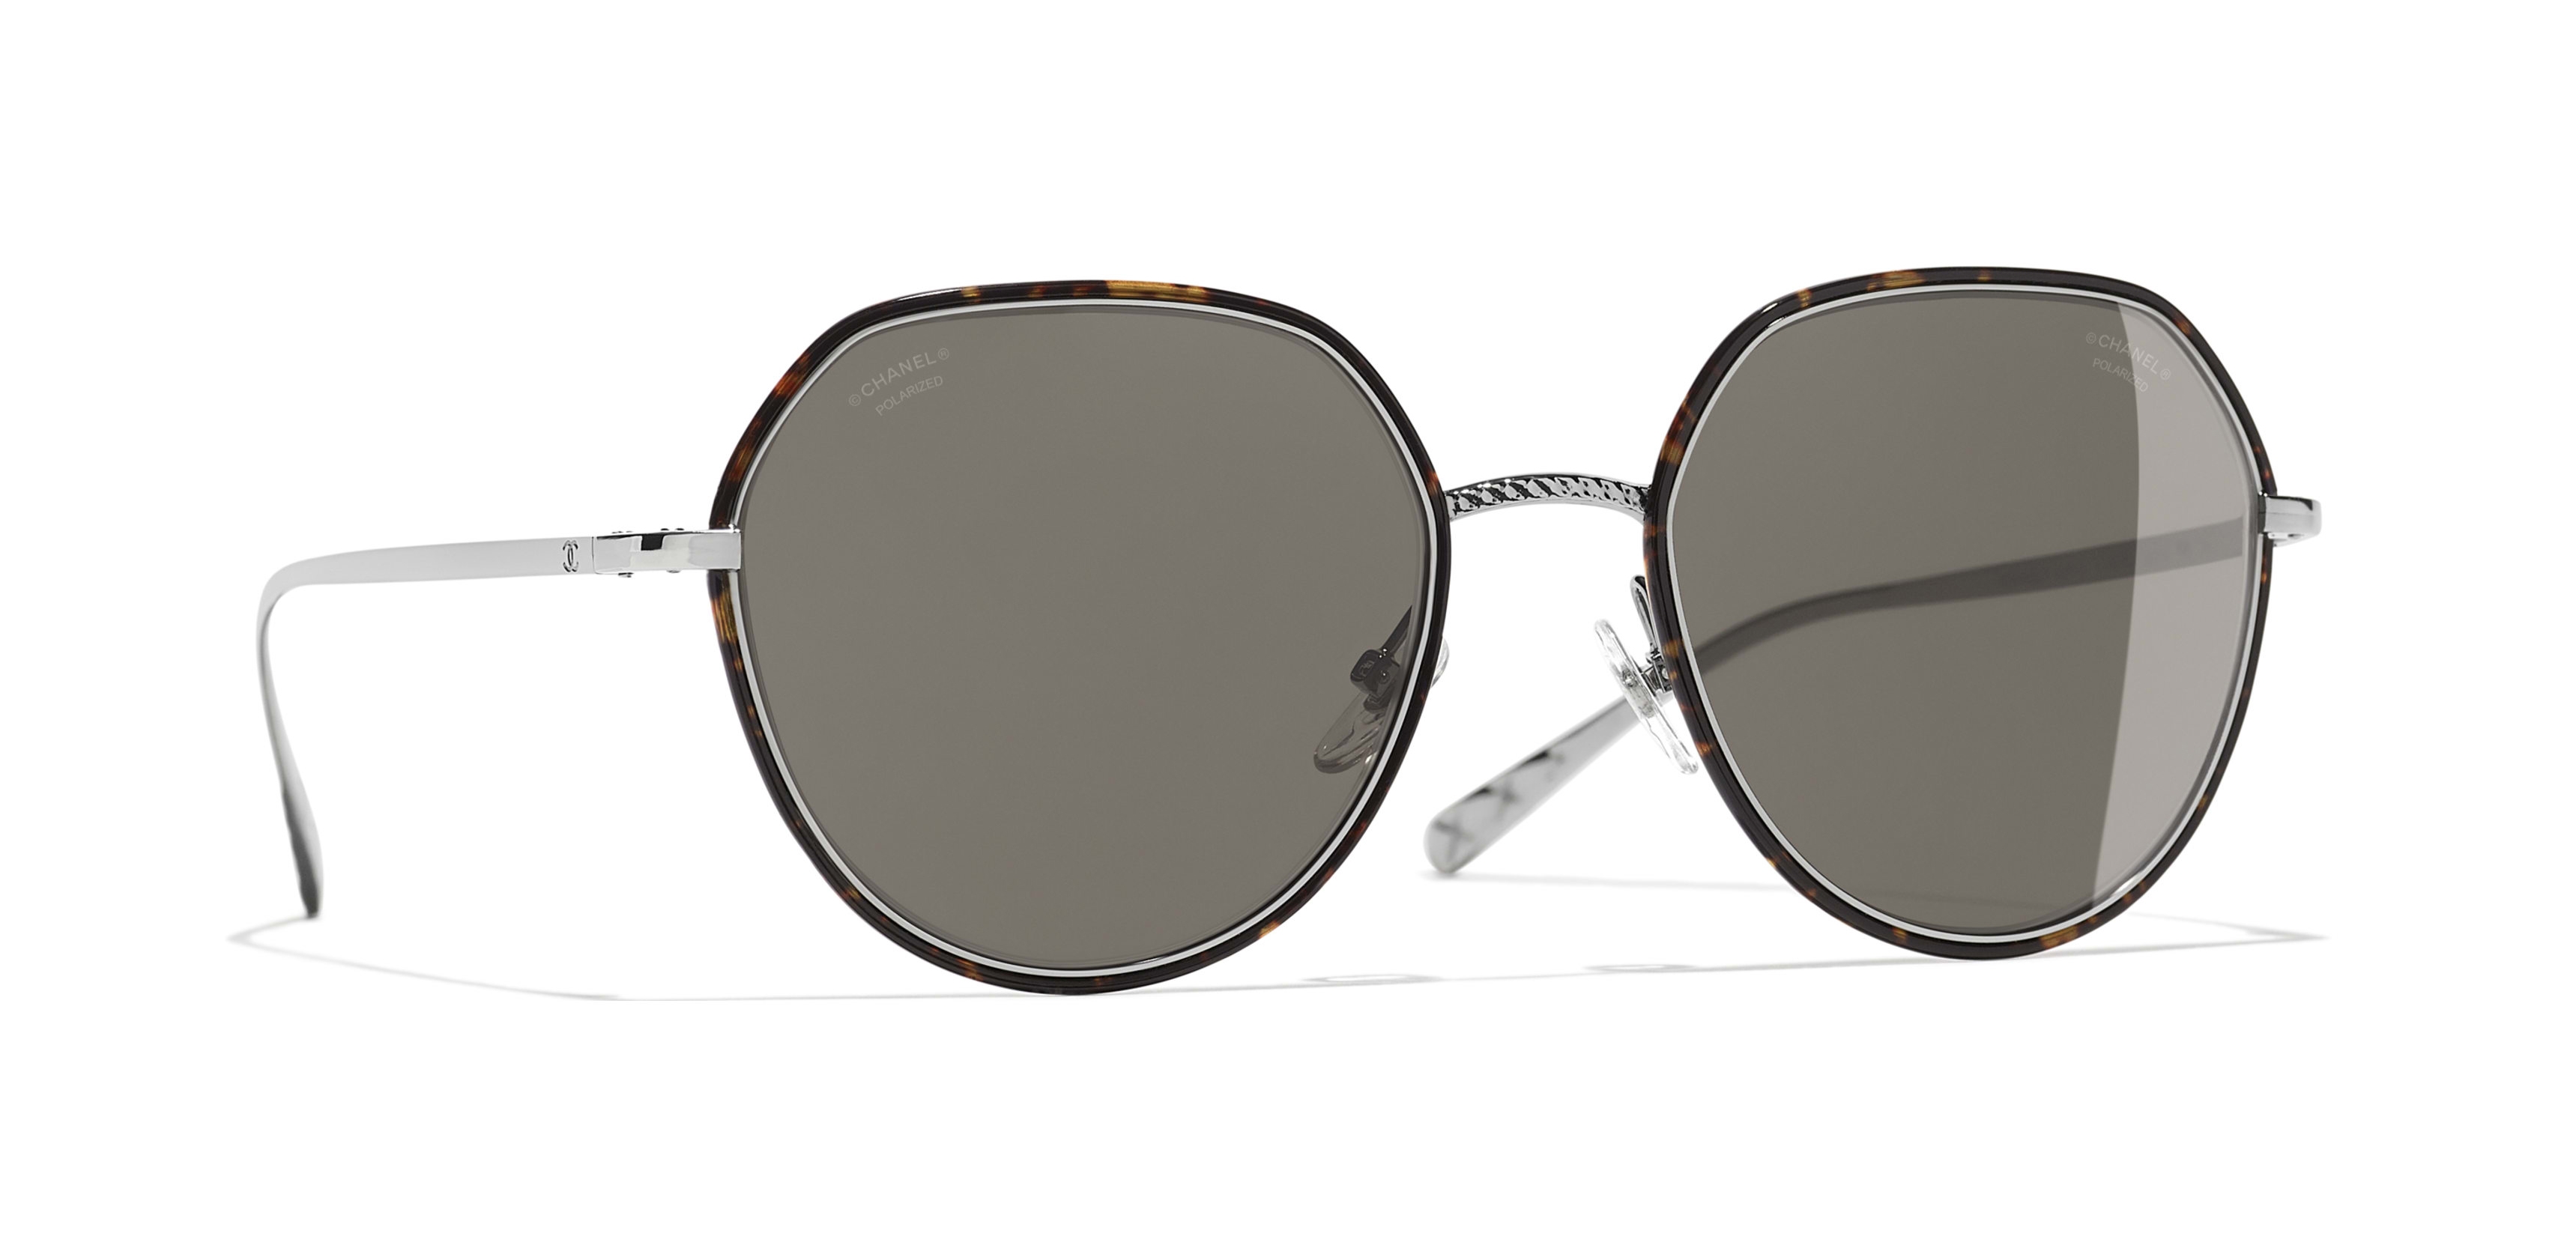 Chanel - Round Sunglasses - Dark Silver Brown - Chanel Eyewear